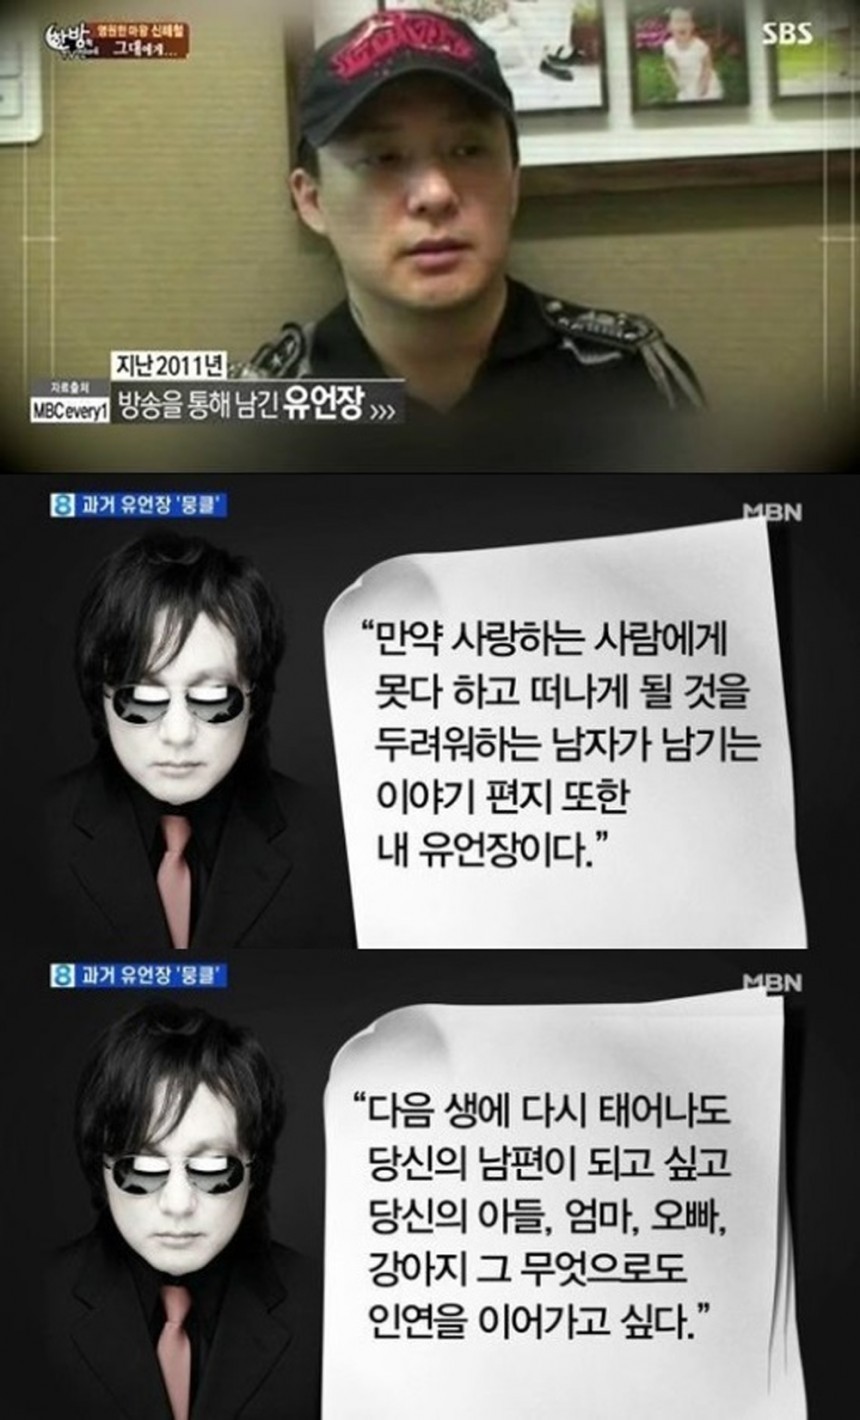 故 신해철 / SBS, MBN 방송캡쳐